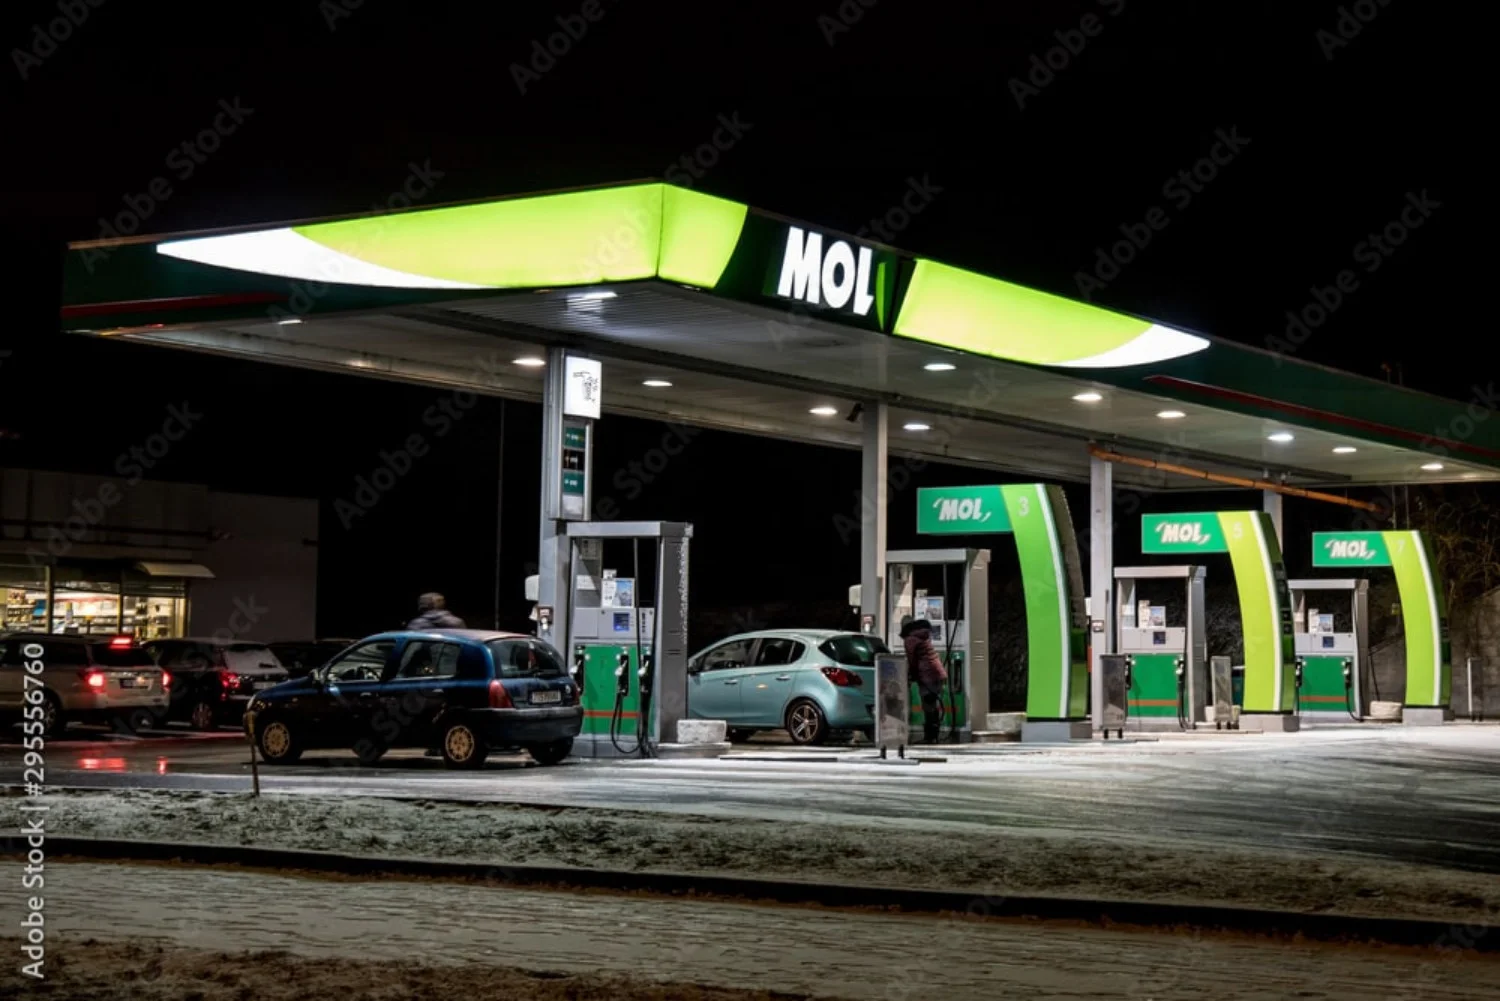 Stacje benzynowe MOL oferują szereg różnych usług, dzięki czemu podróż samochodem jest przyjemniejsza.